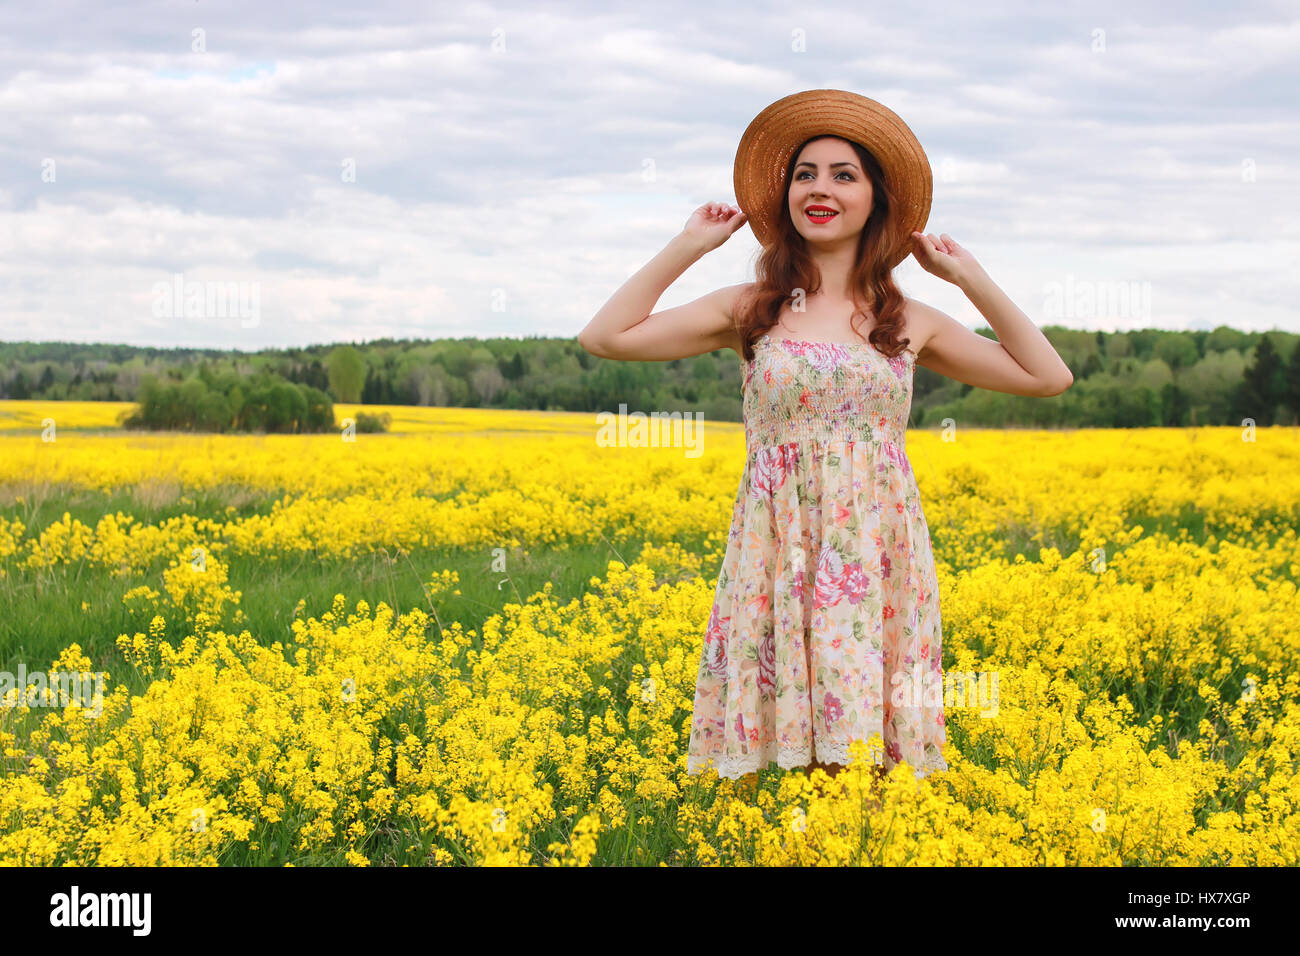 Jeune fille dans un champ de fleurs avec panier et un chapeau Photo Stock -  Alamy